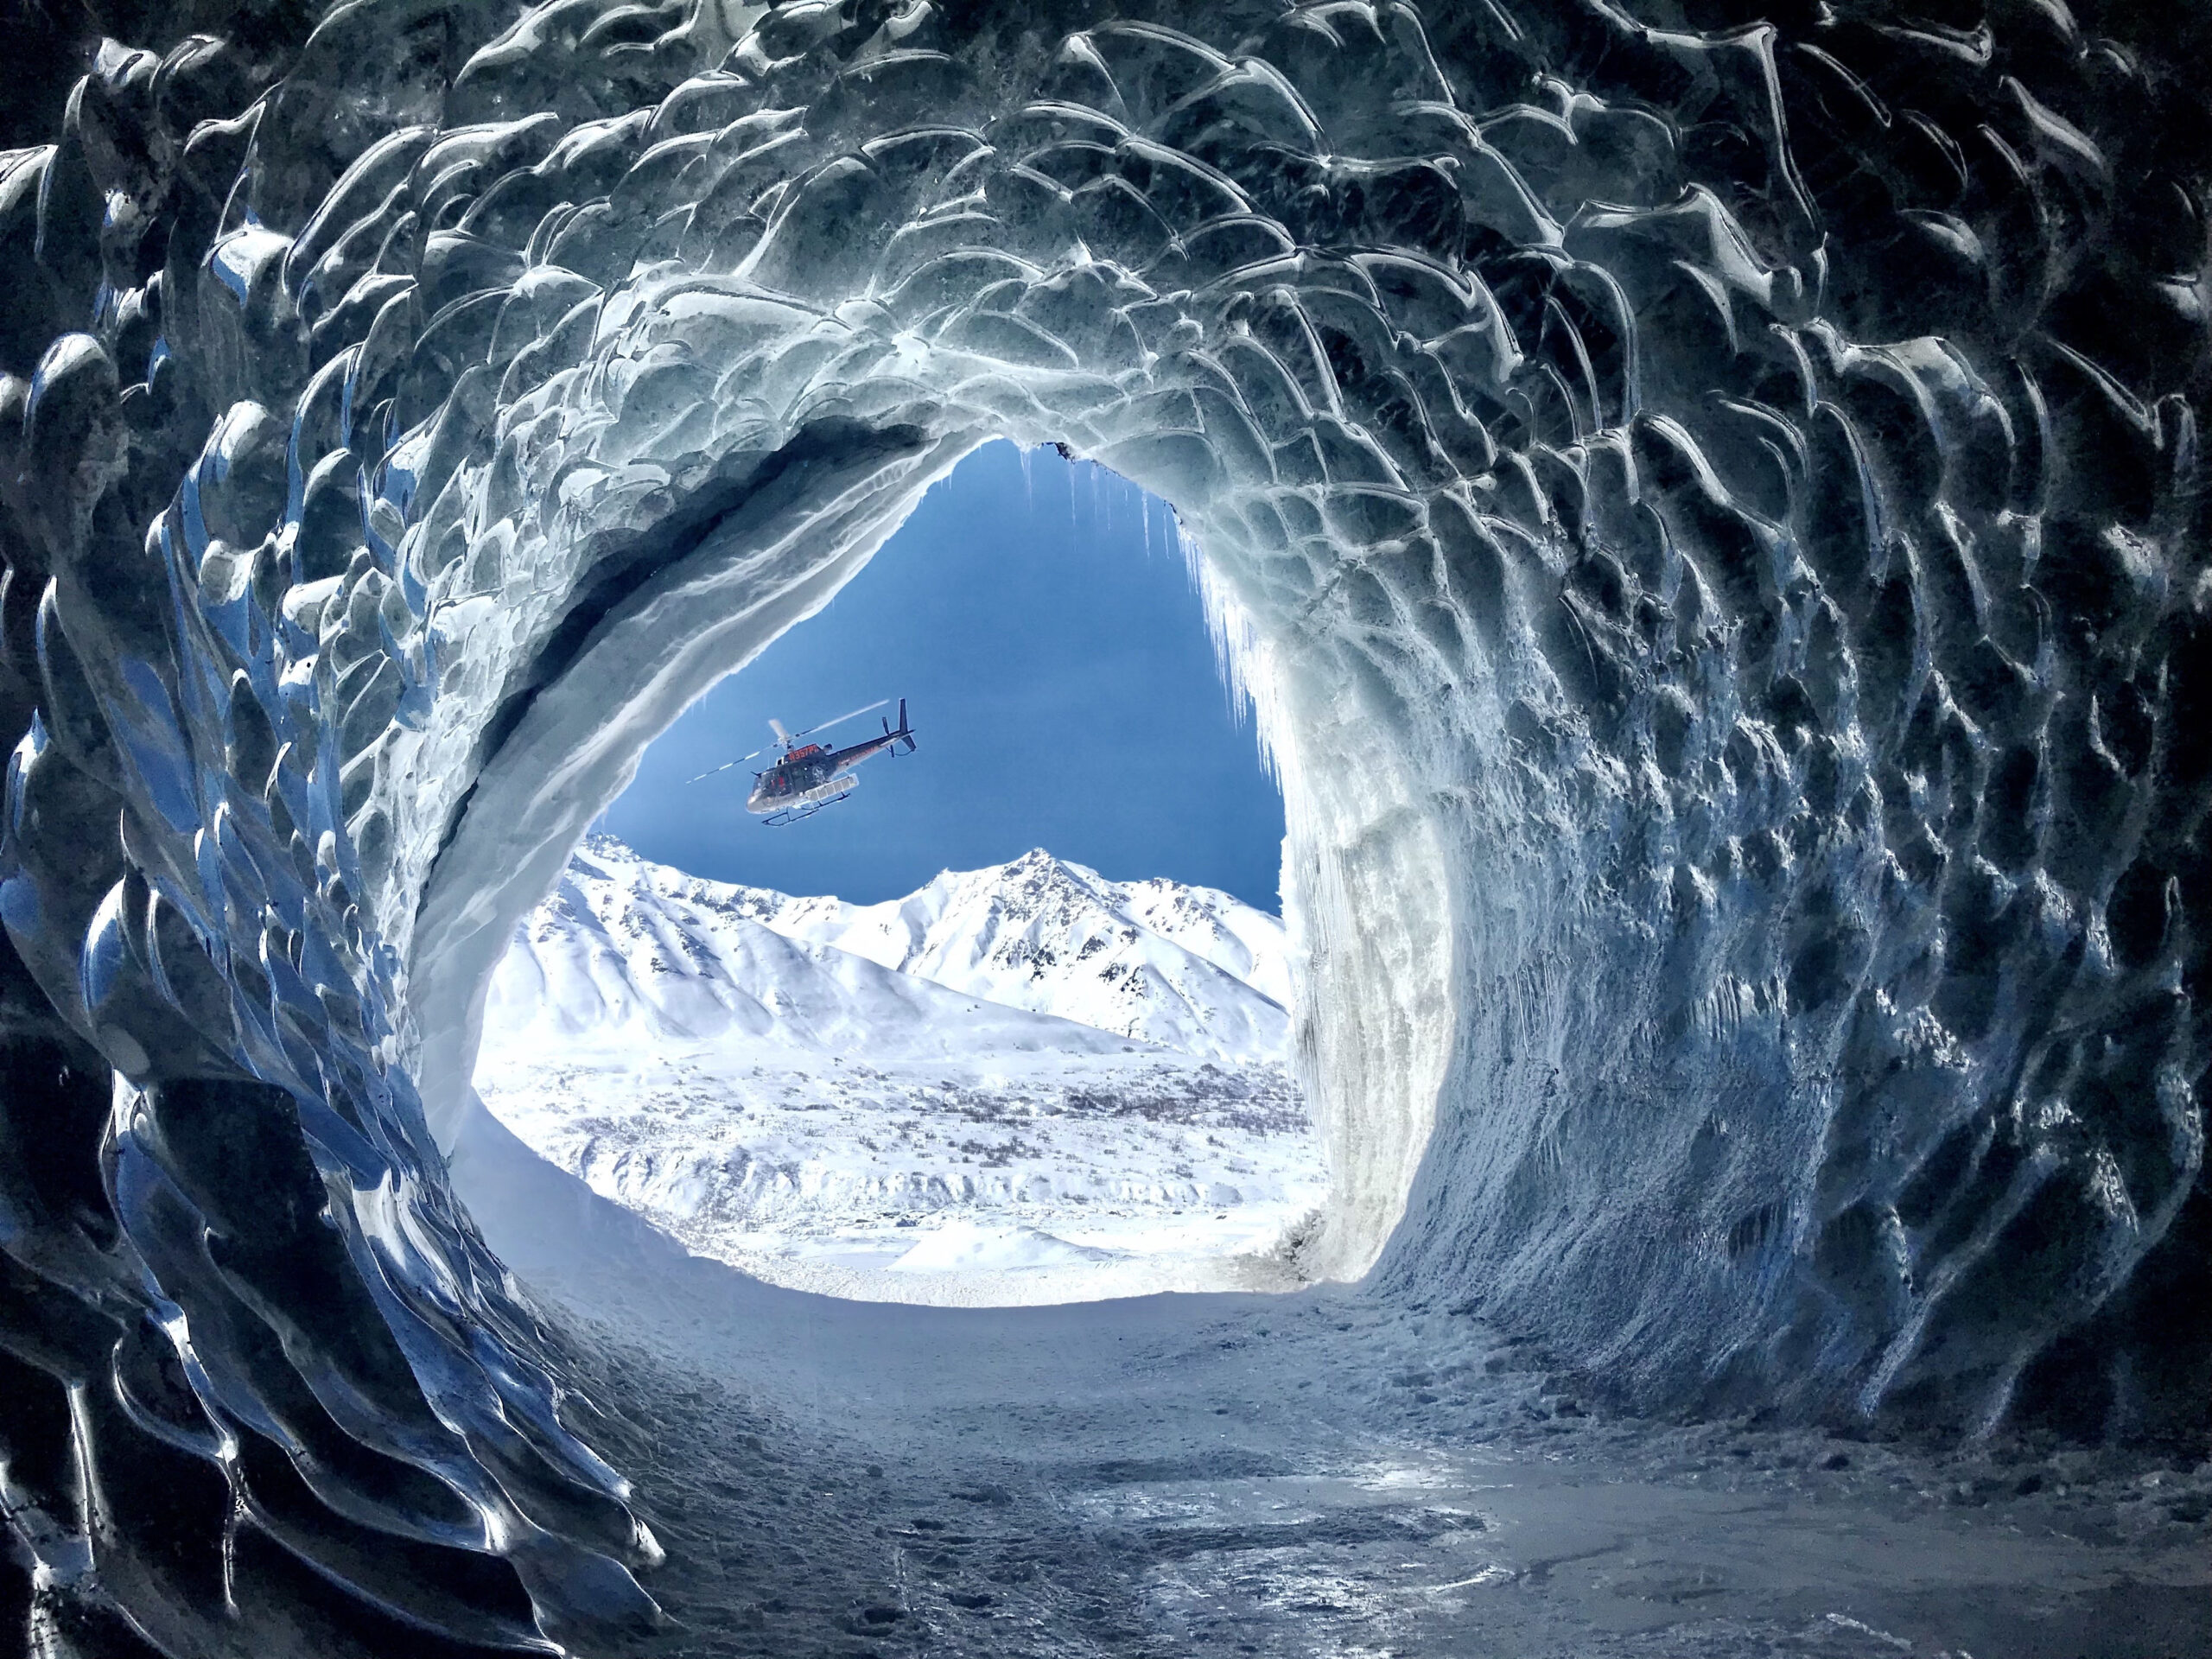 Heli through the Glacier Tunnel